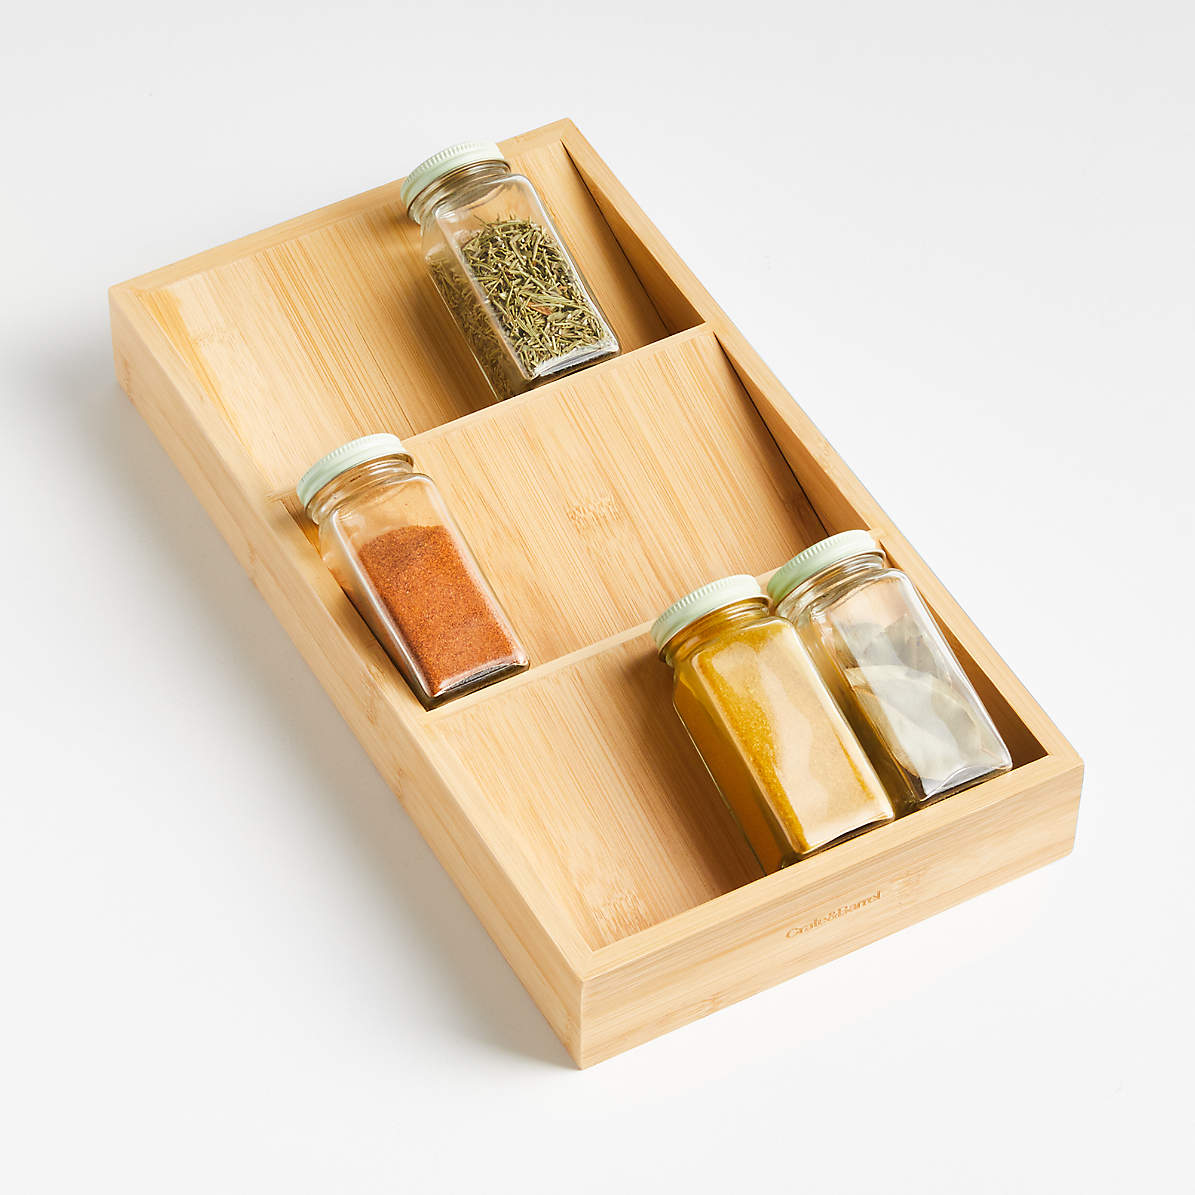 Customizable Spice Rack Drawer Organizer / Spice Storage Drawer Organization  / Kitchen Drawer Insert Spice Storage With Liner / Horizontal 